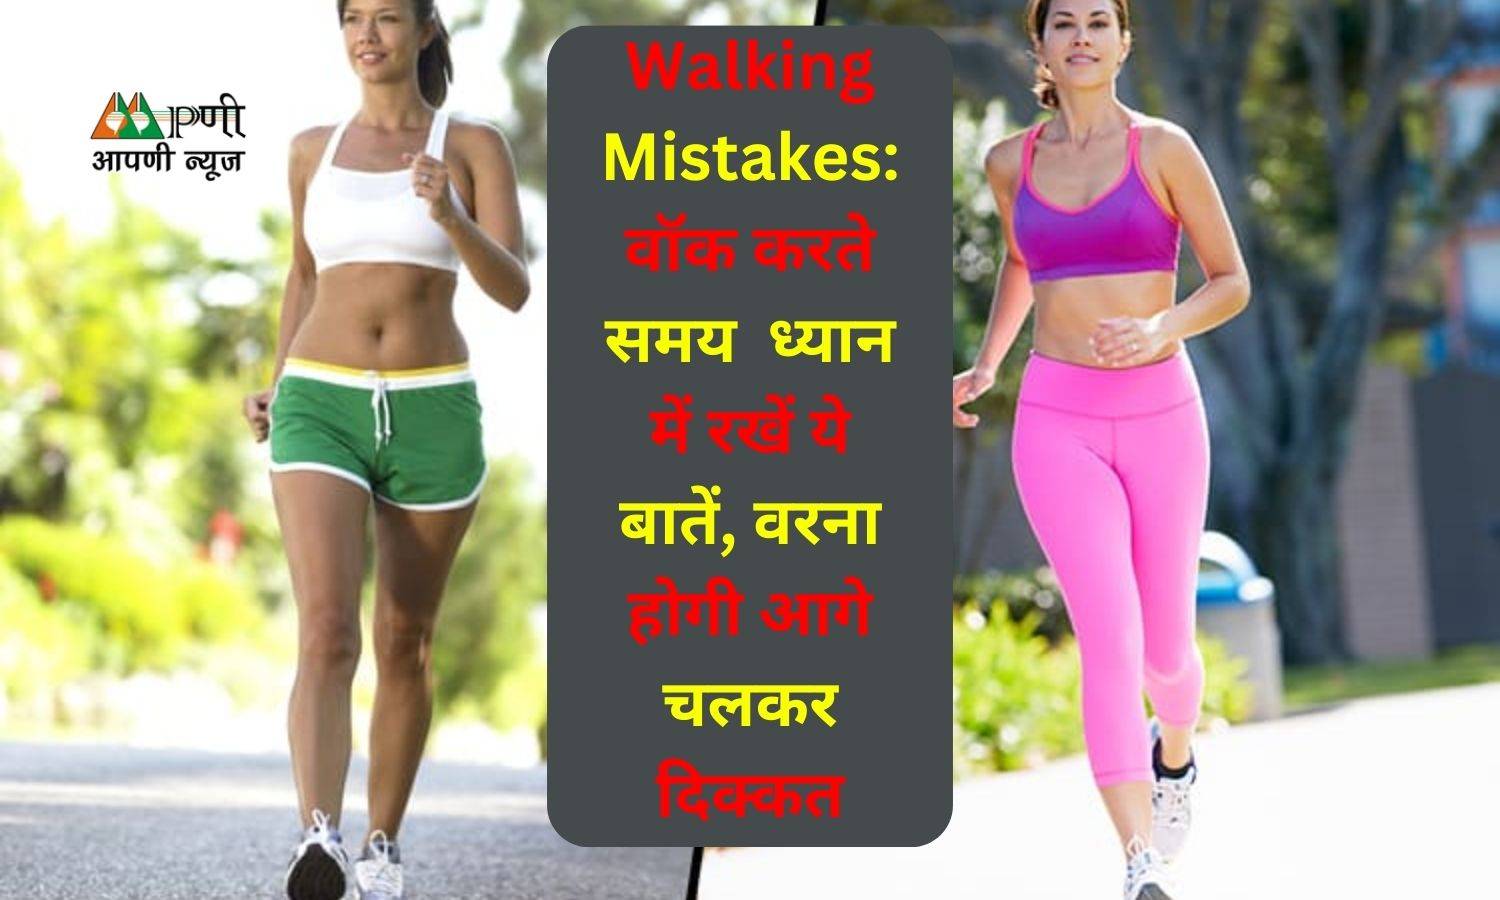 Walking Mistakes: वॉक करते समय  ध्यान में रखें ये बातें, वरना होगी आगे चलकर दिक्कत